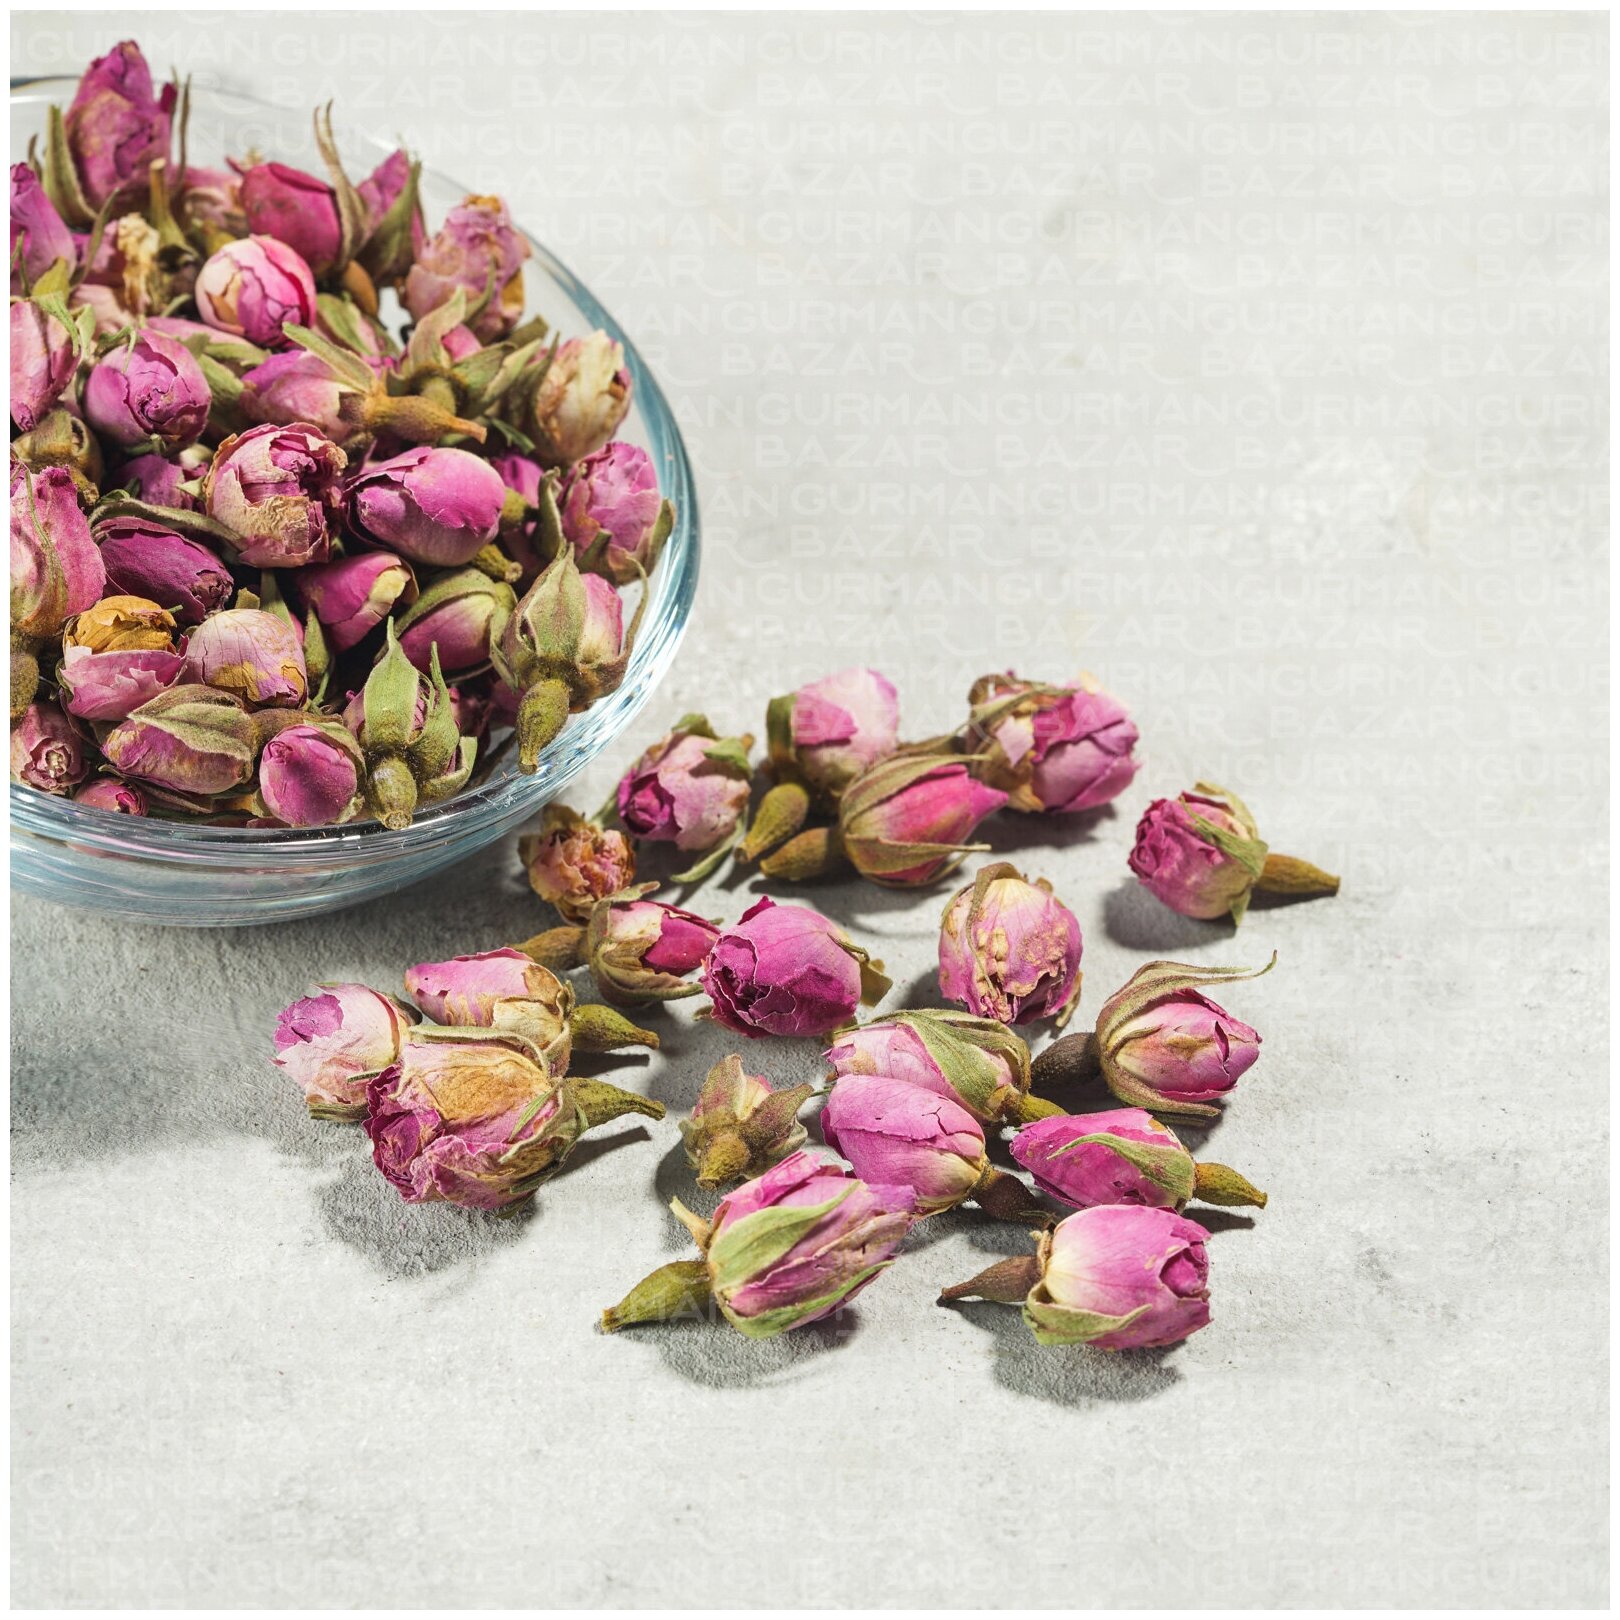 Ceremony Настоящий цветочный чай из Бутонов Роз Мей Гуй Хуа Бао 50 г (Rose Buts Tea, Роза Юньнаньская, Бутоны китайской розы)